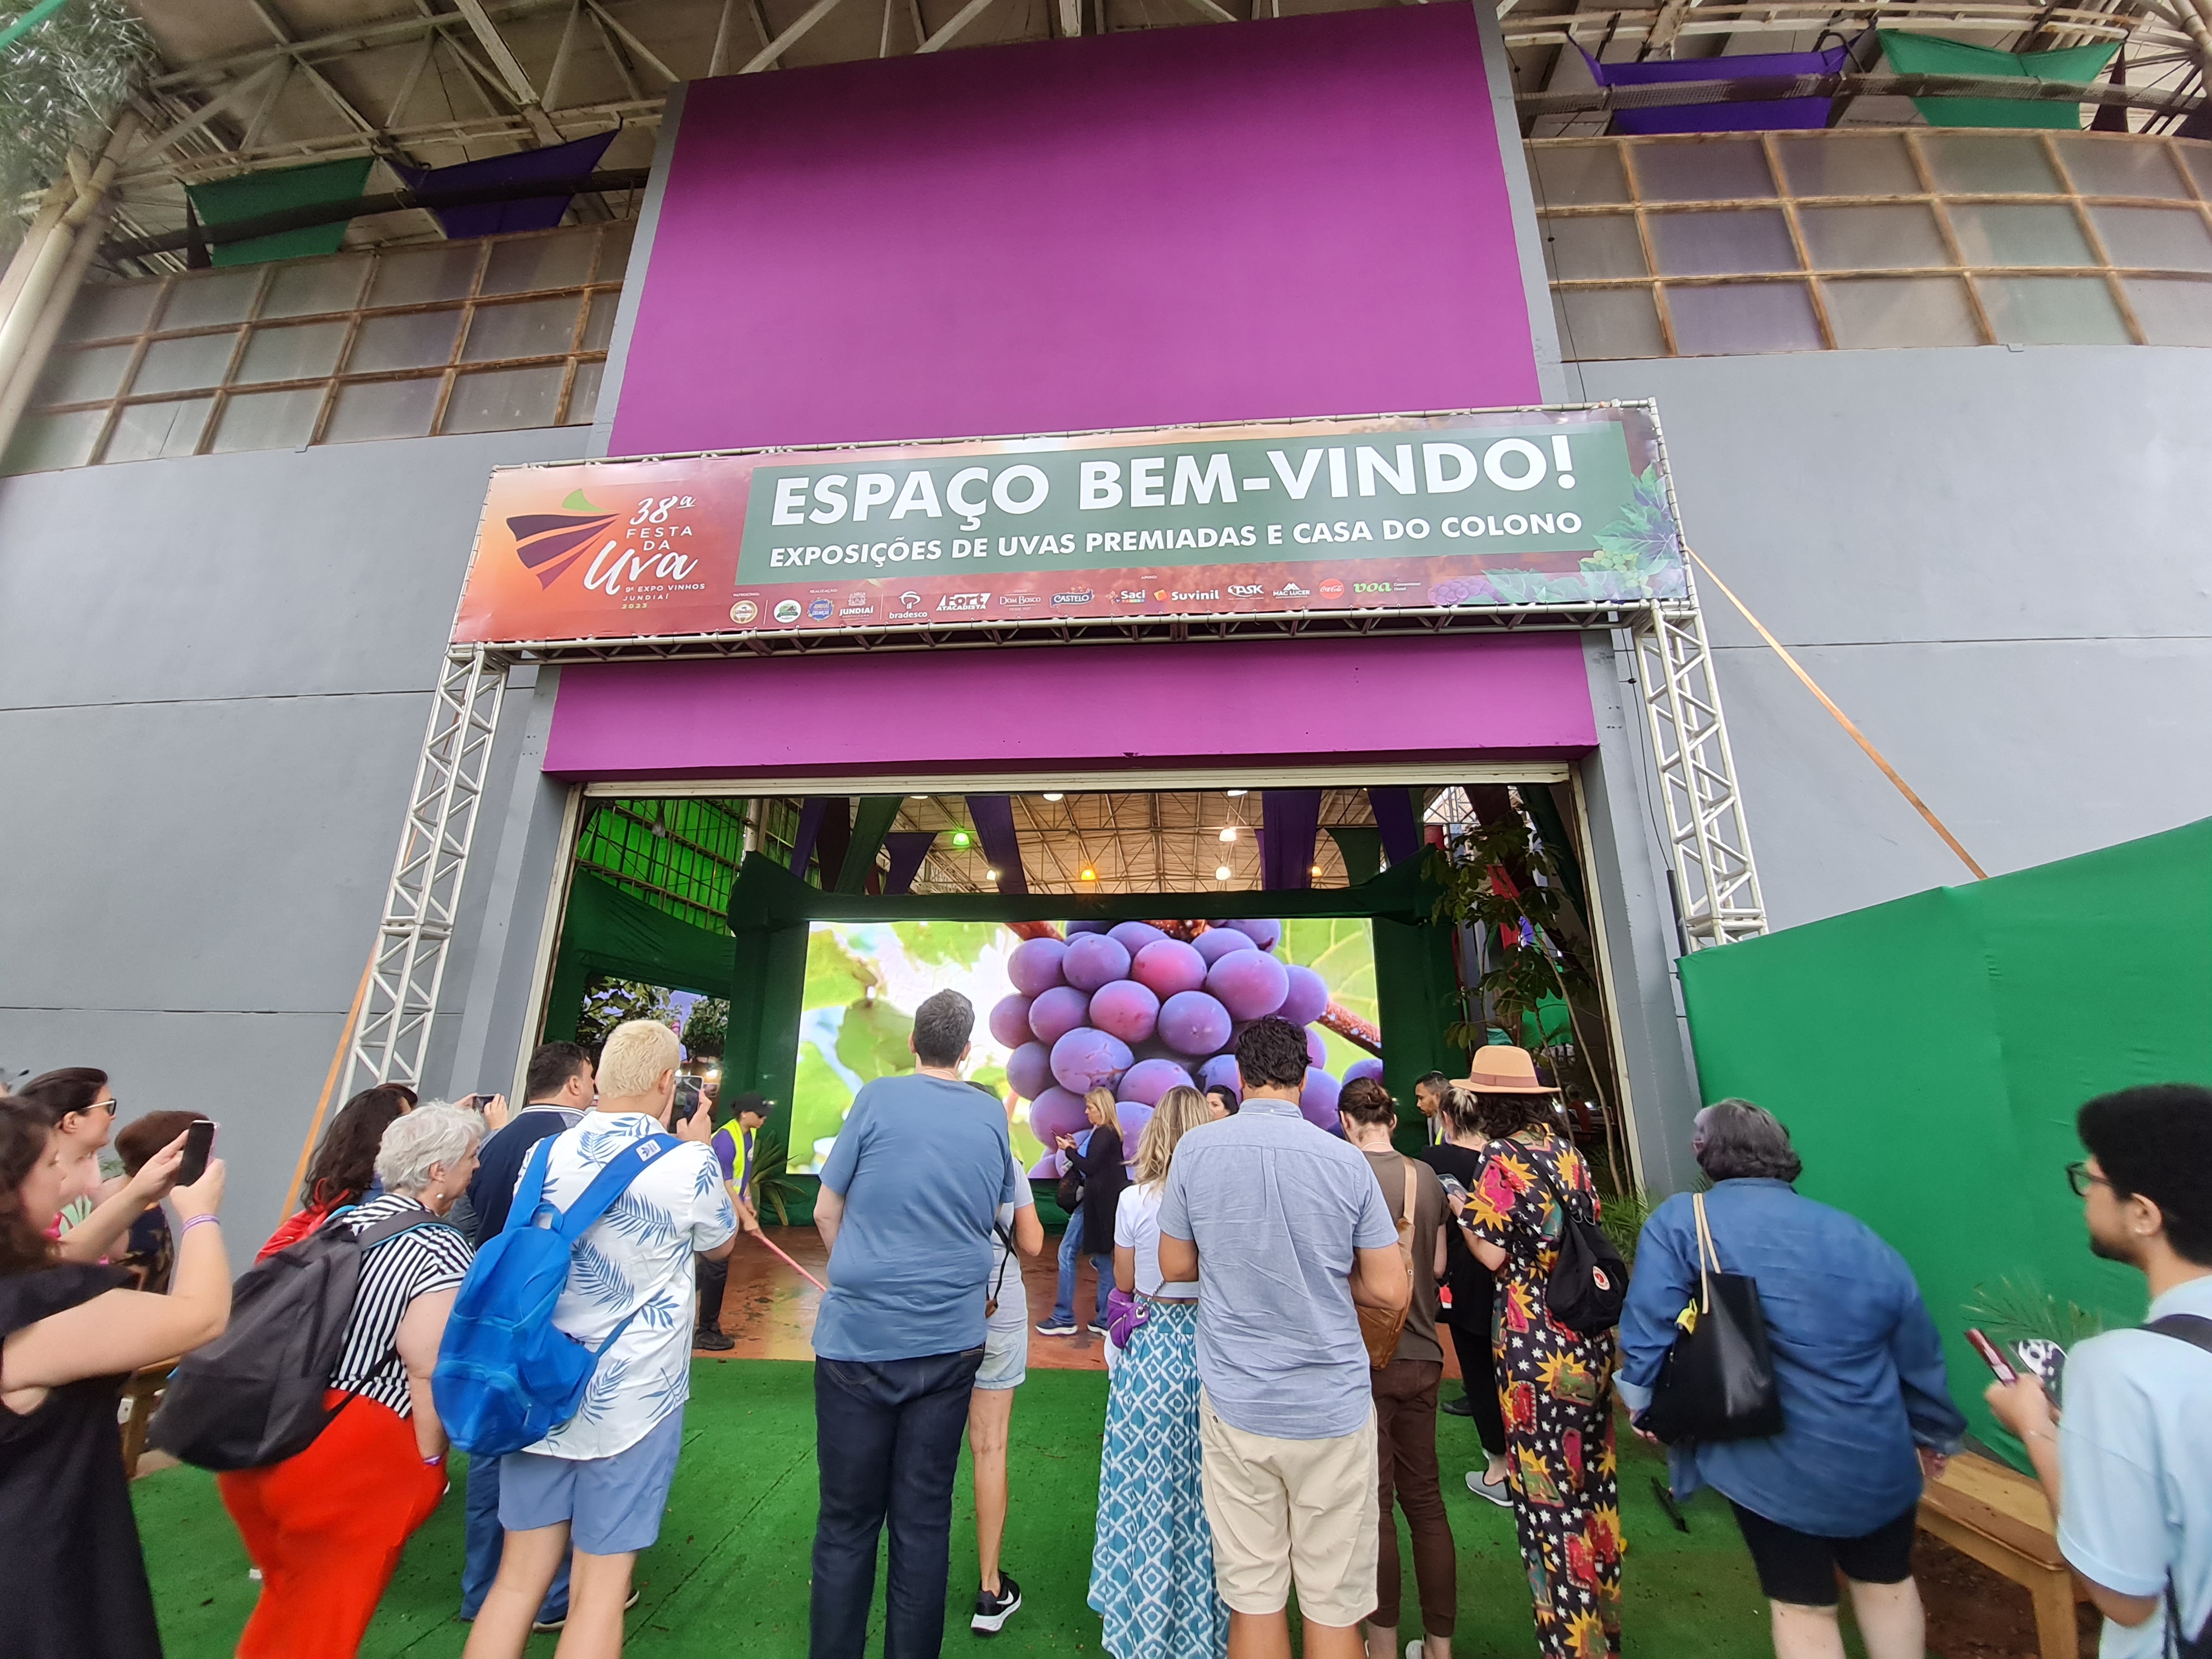 Espaço Bem-Vindo, onde é apresentado as uvas premiadas. Foto: Isabela Frasinelli/iG